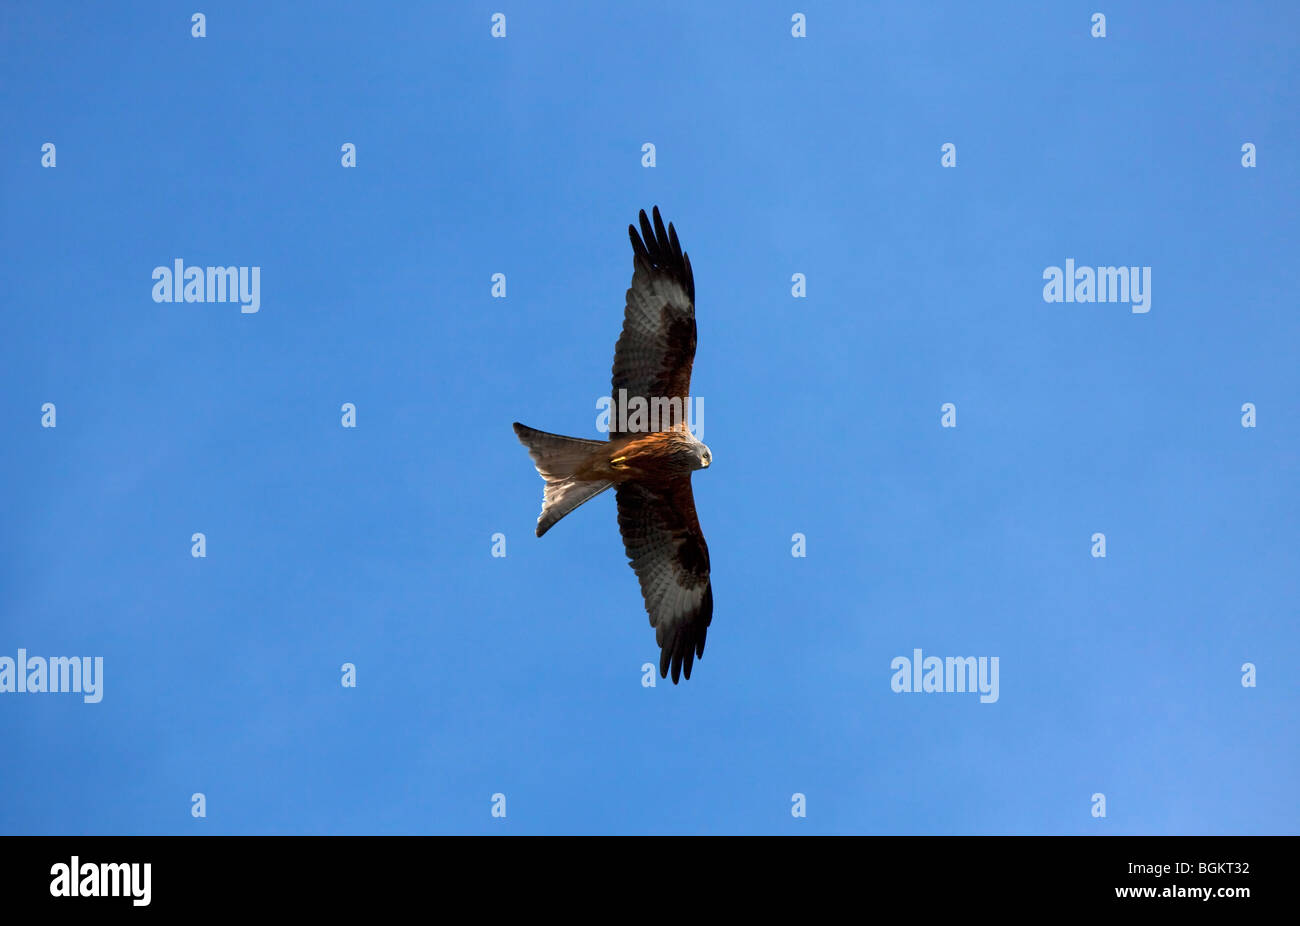 Red kite (Milvus milvus) flying against blue sky Stock Photo